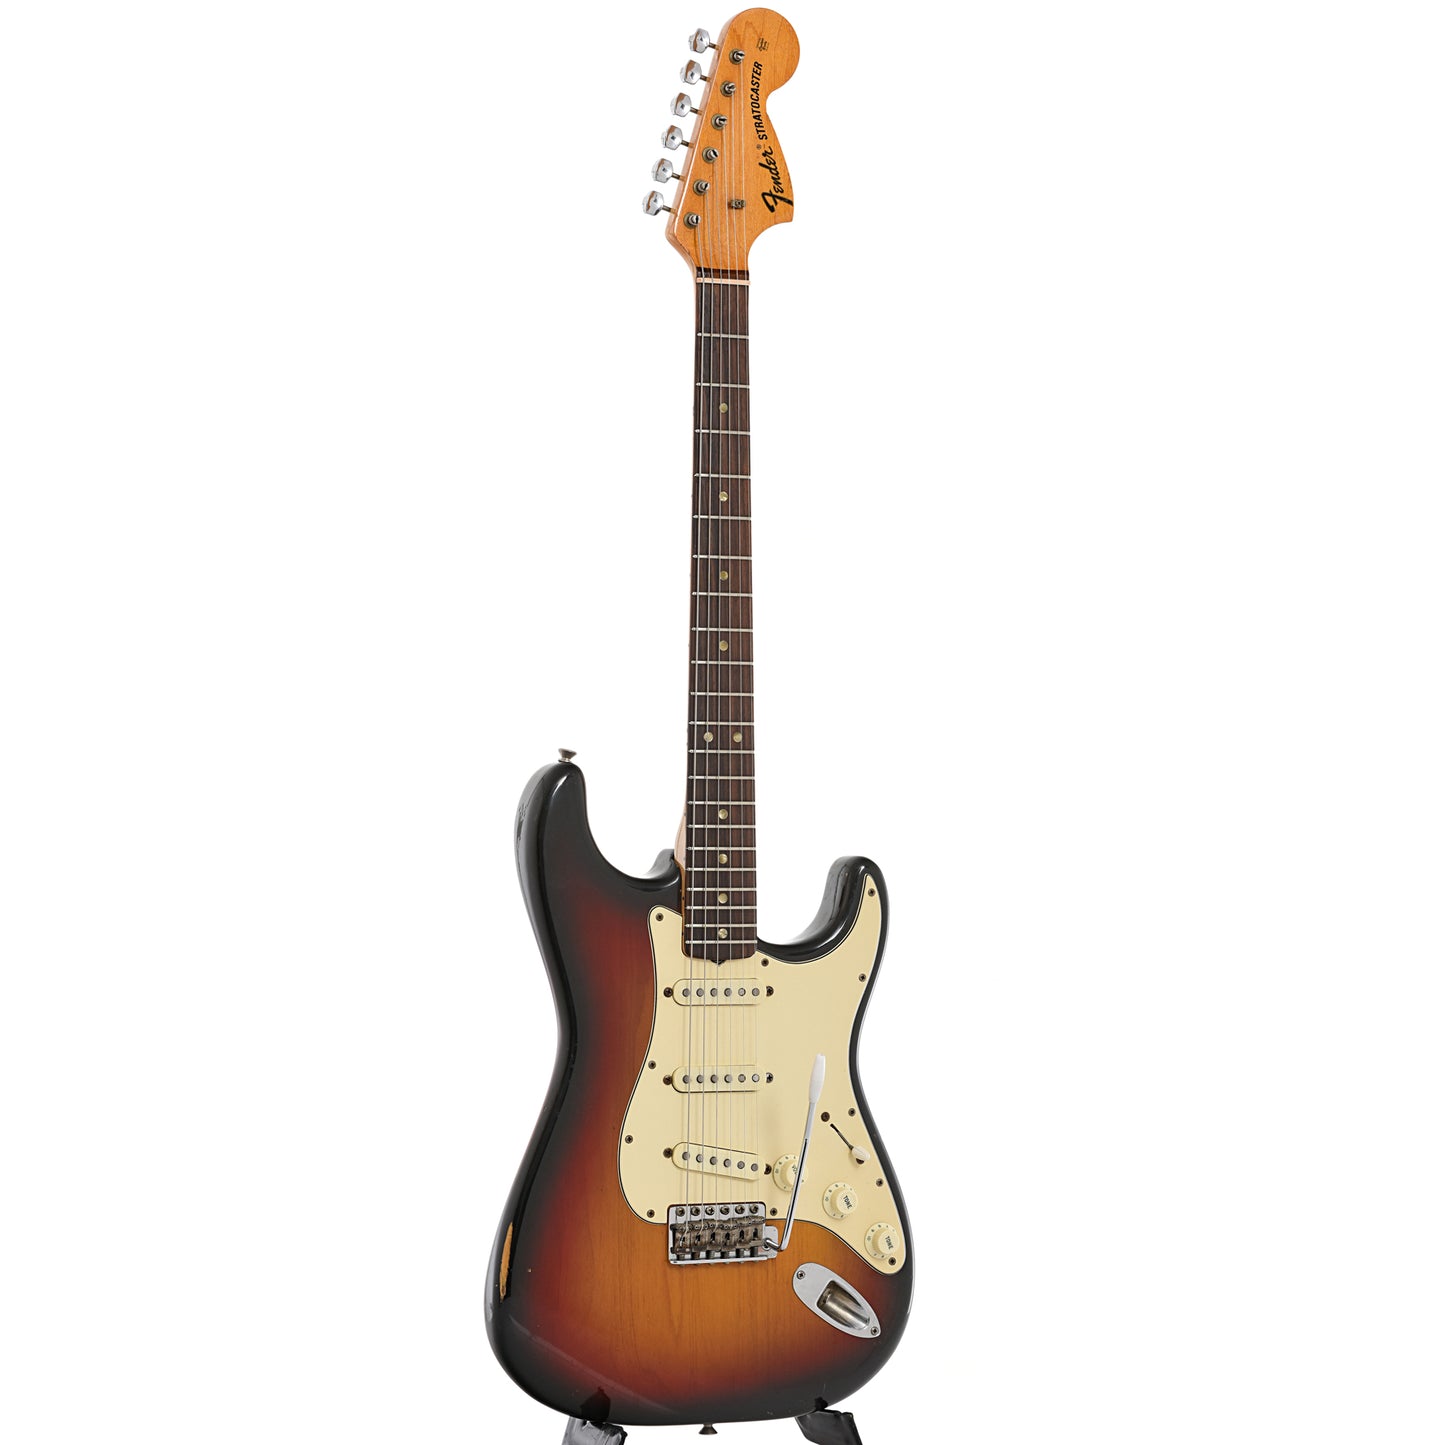 Full and side of Fender Stratocaster